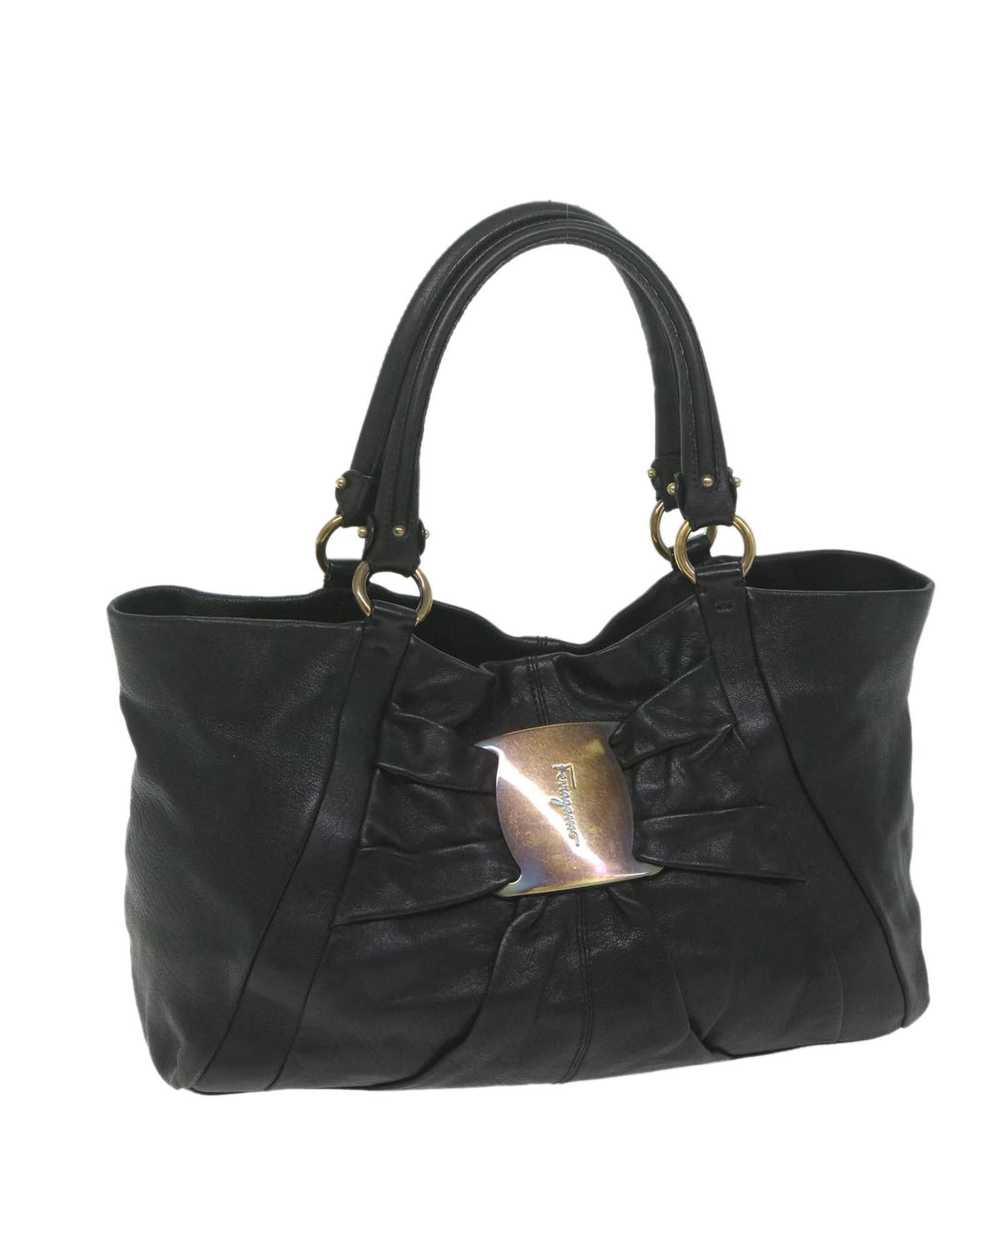 Salvatore Ferragamo Black Leather Tote Bag by Ita… - image 1